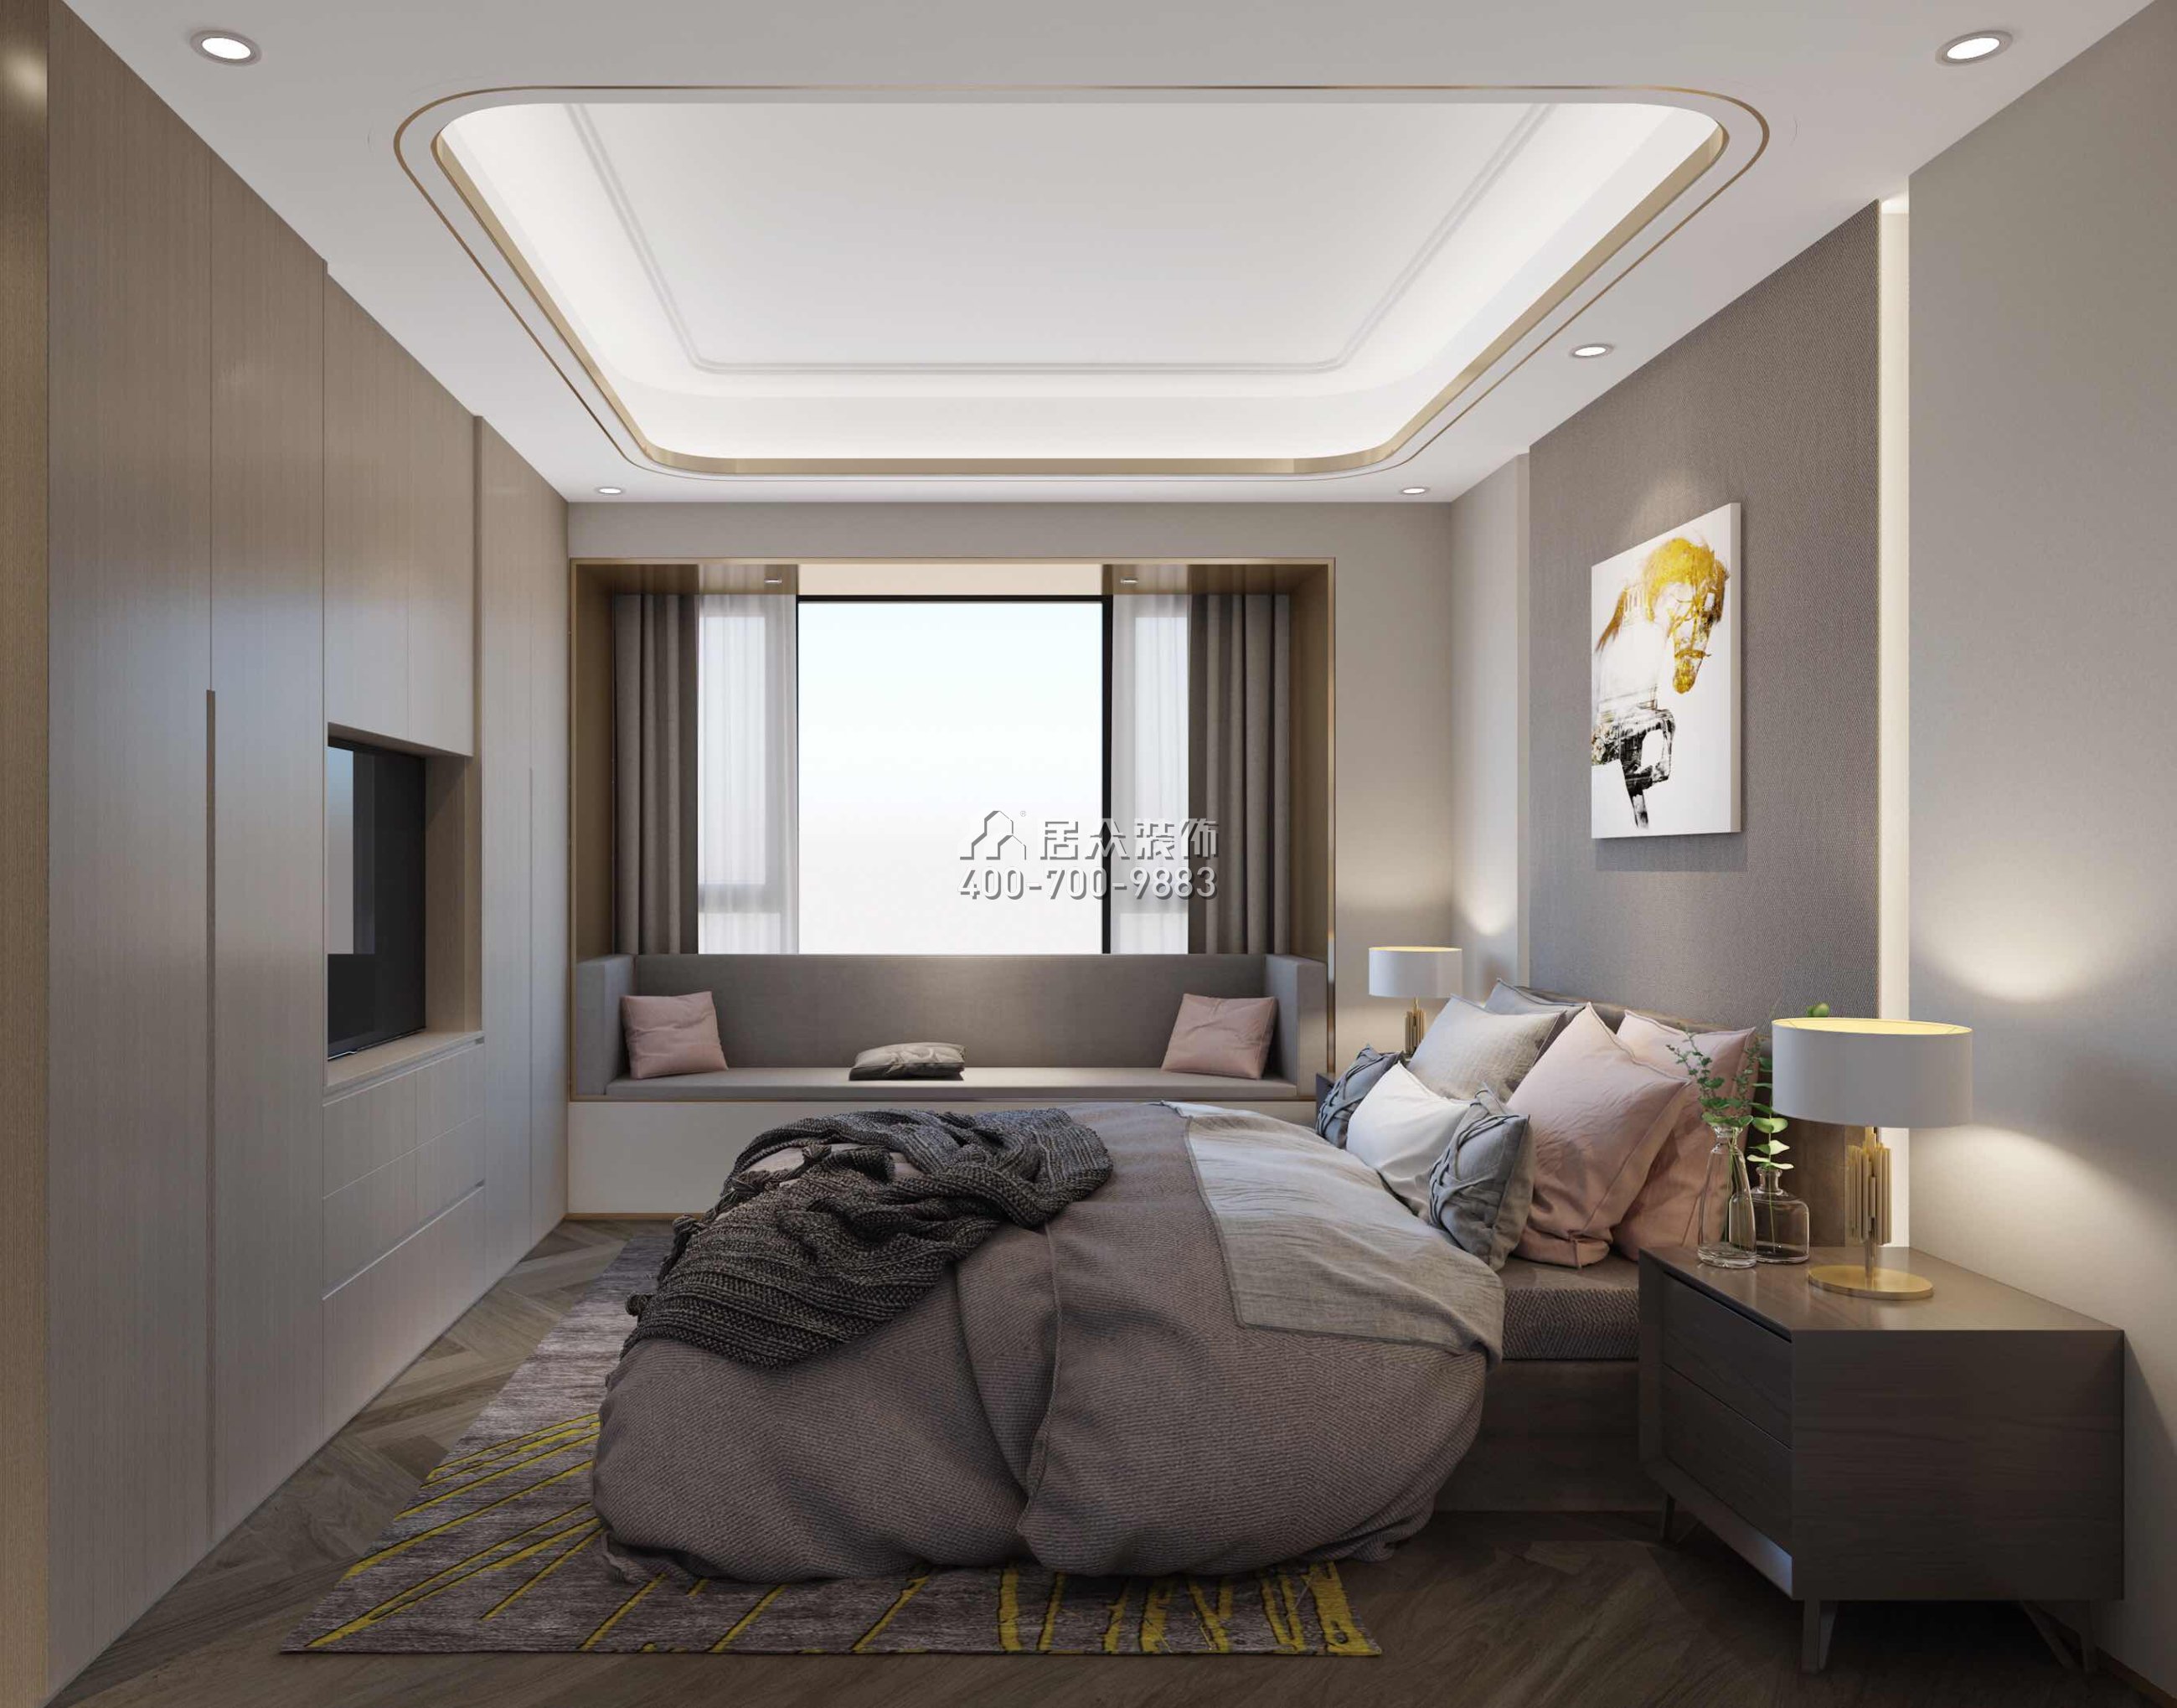 壹方中心170平方米現代簡約風格平層戶型臥室裝修效果圖